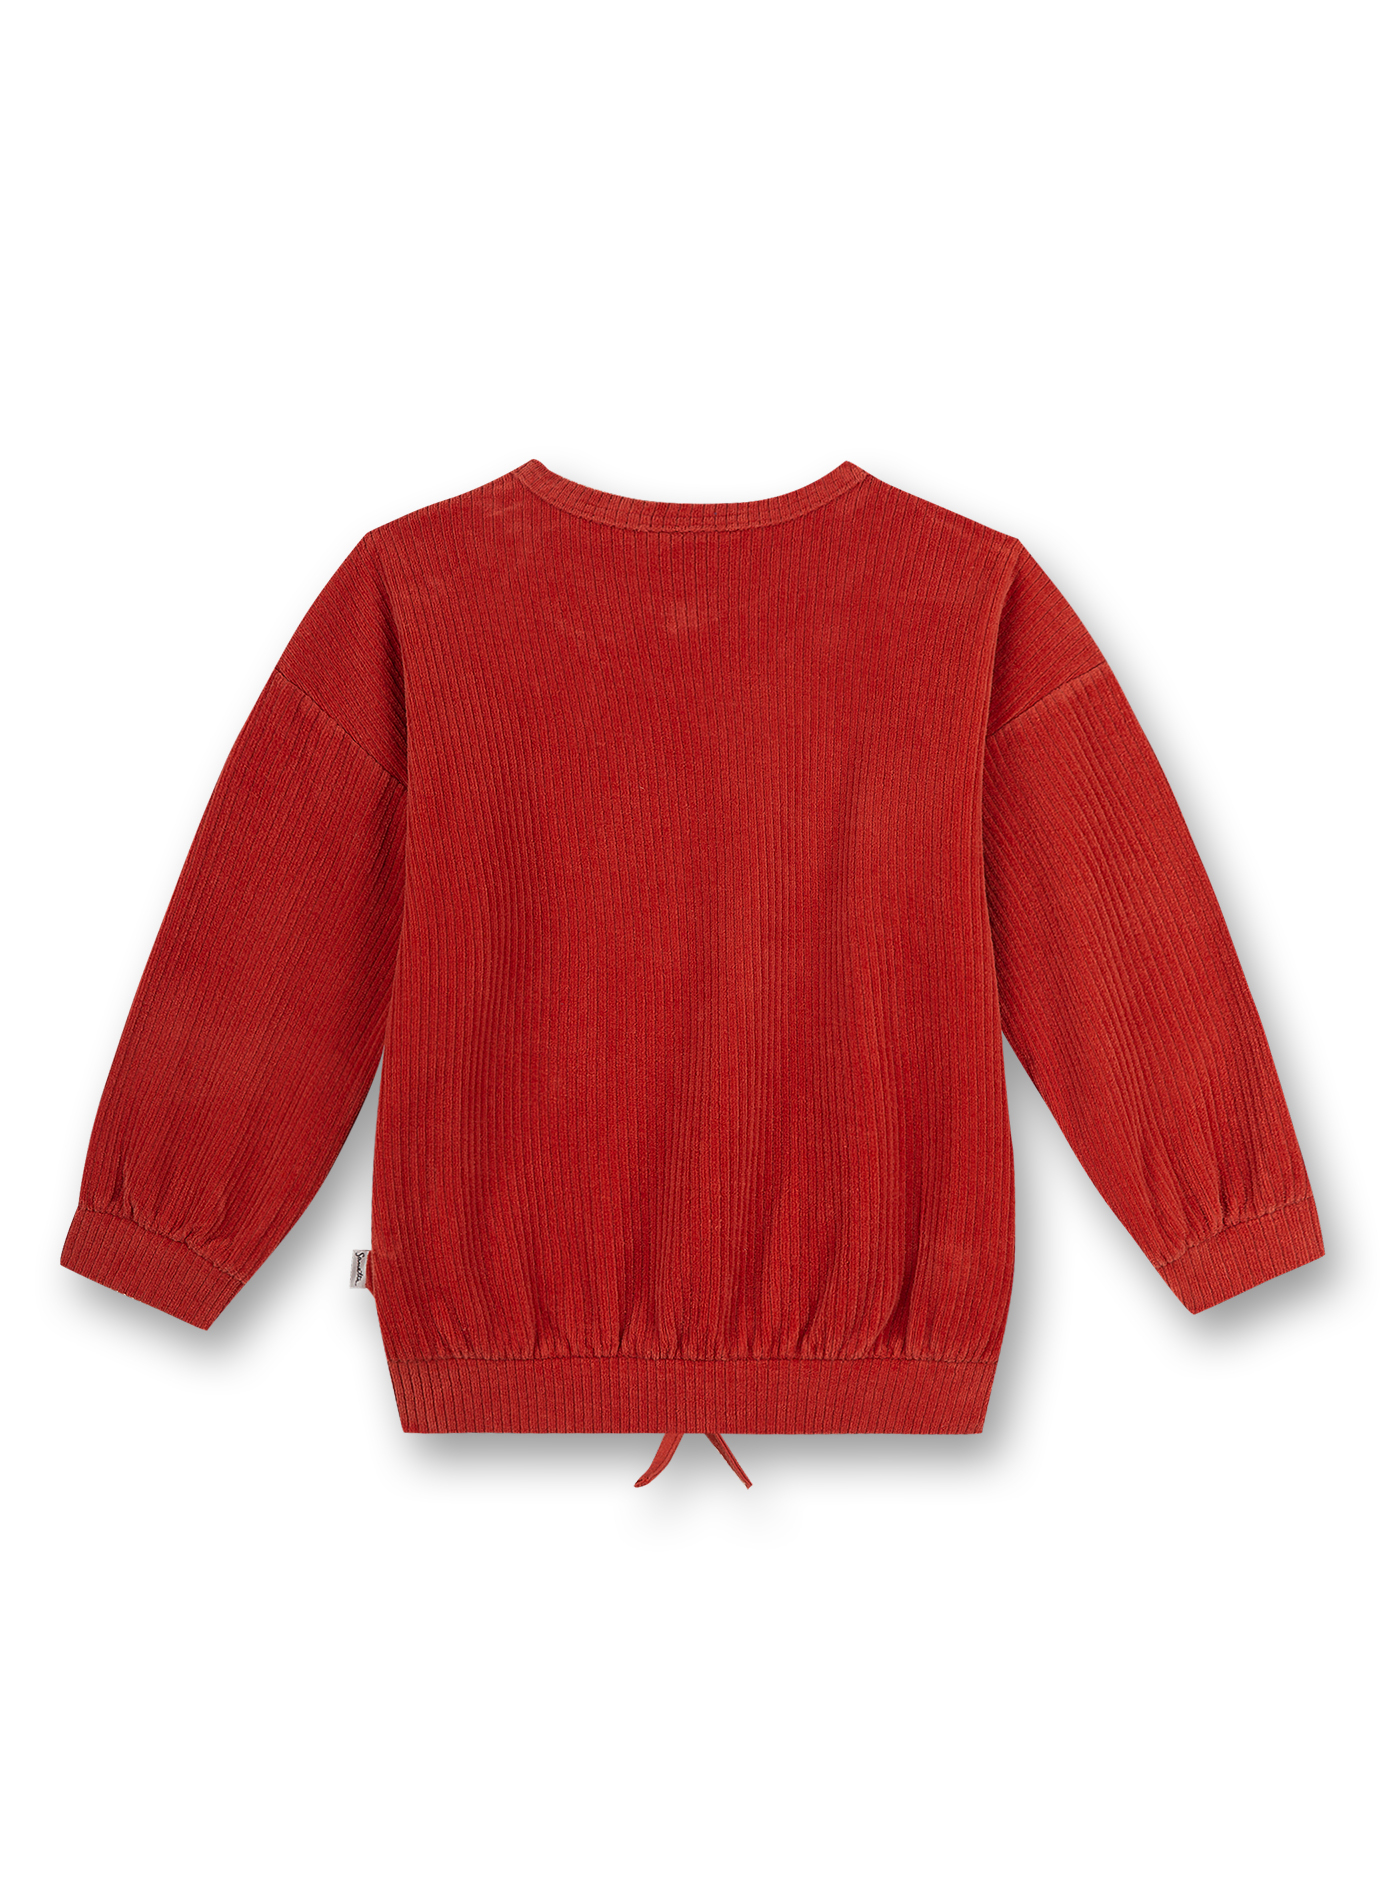 Mädchen-Sweatshirt Rot Sweet Desaster